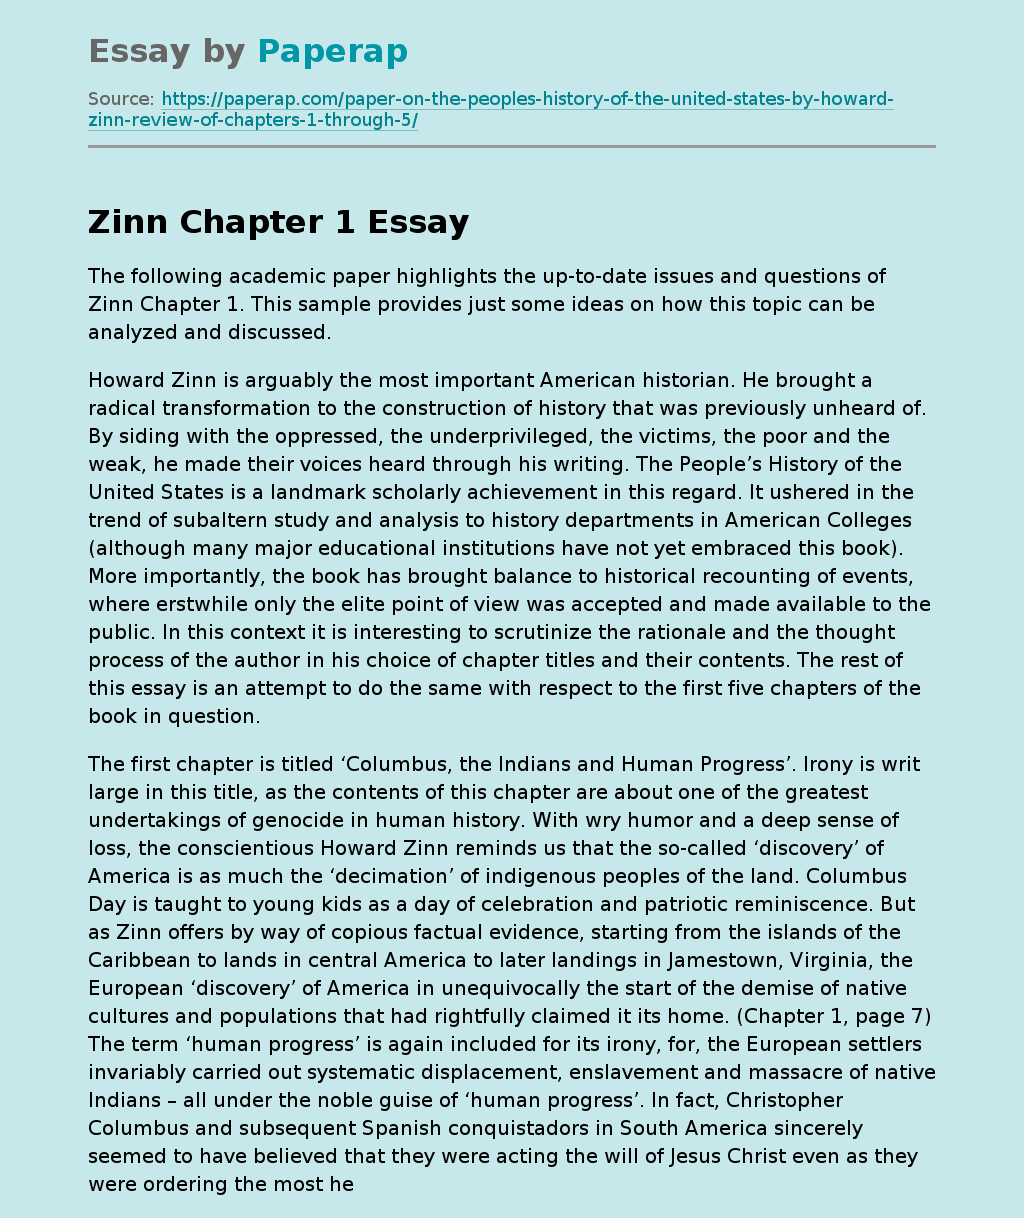 Zinn Chapter 1